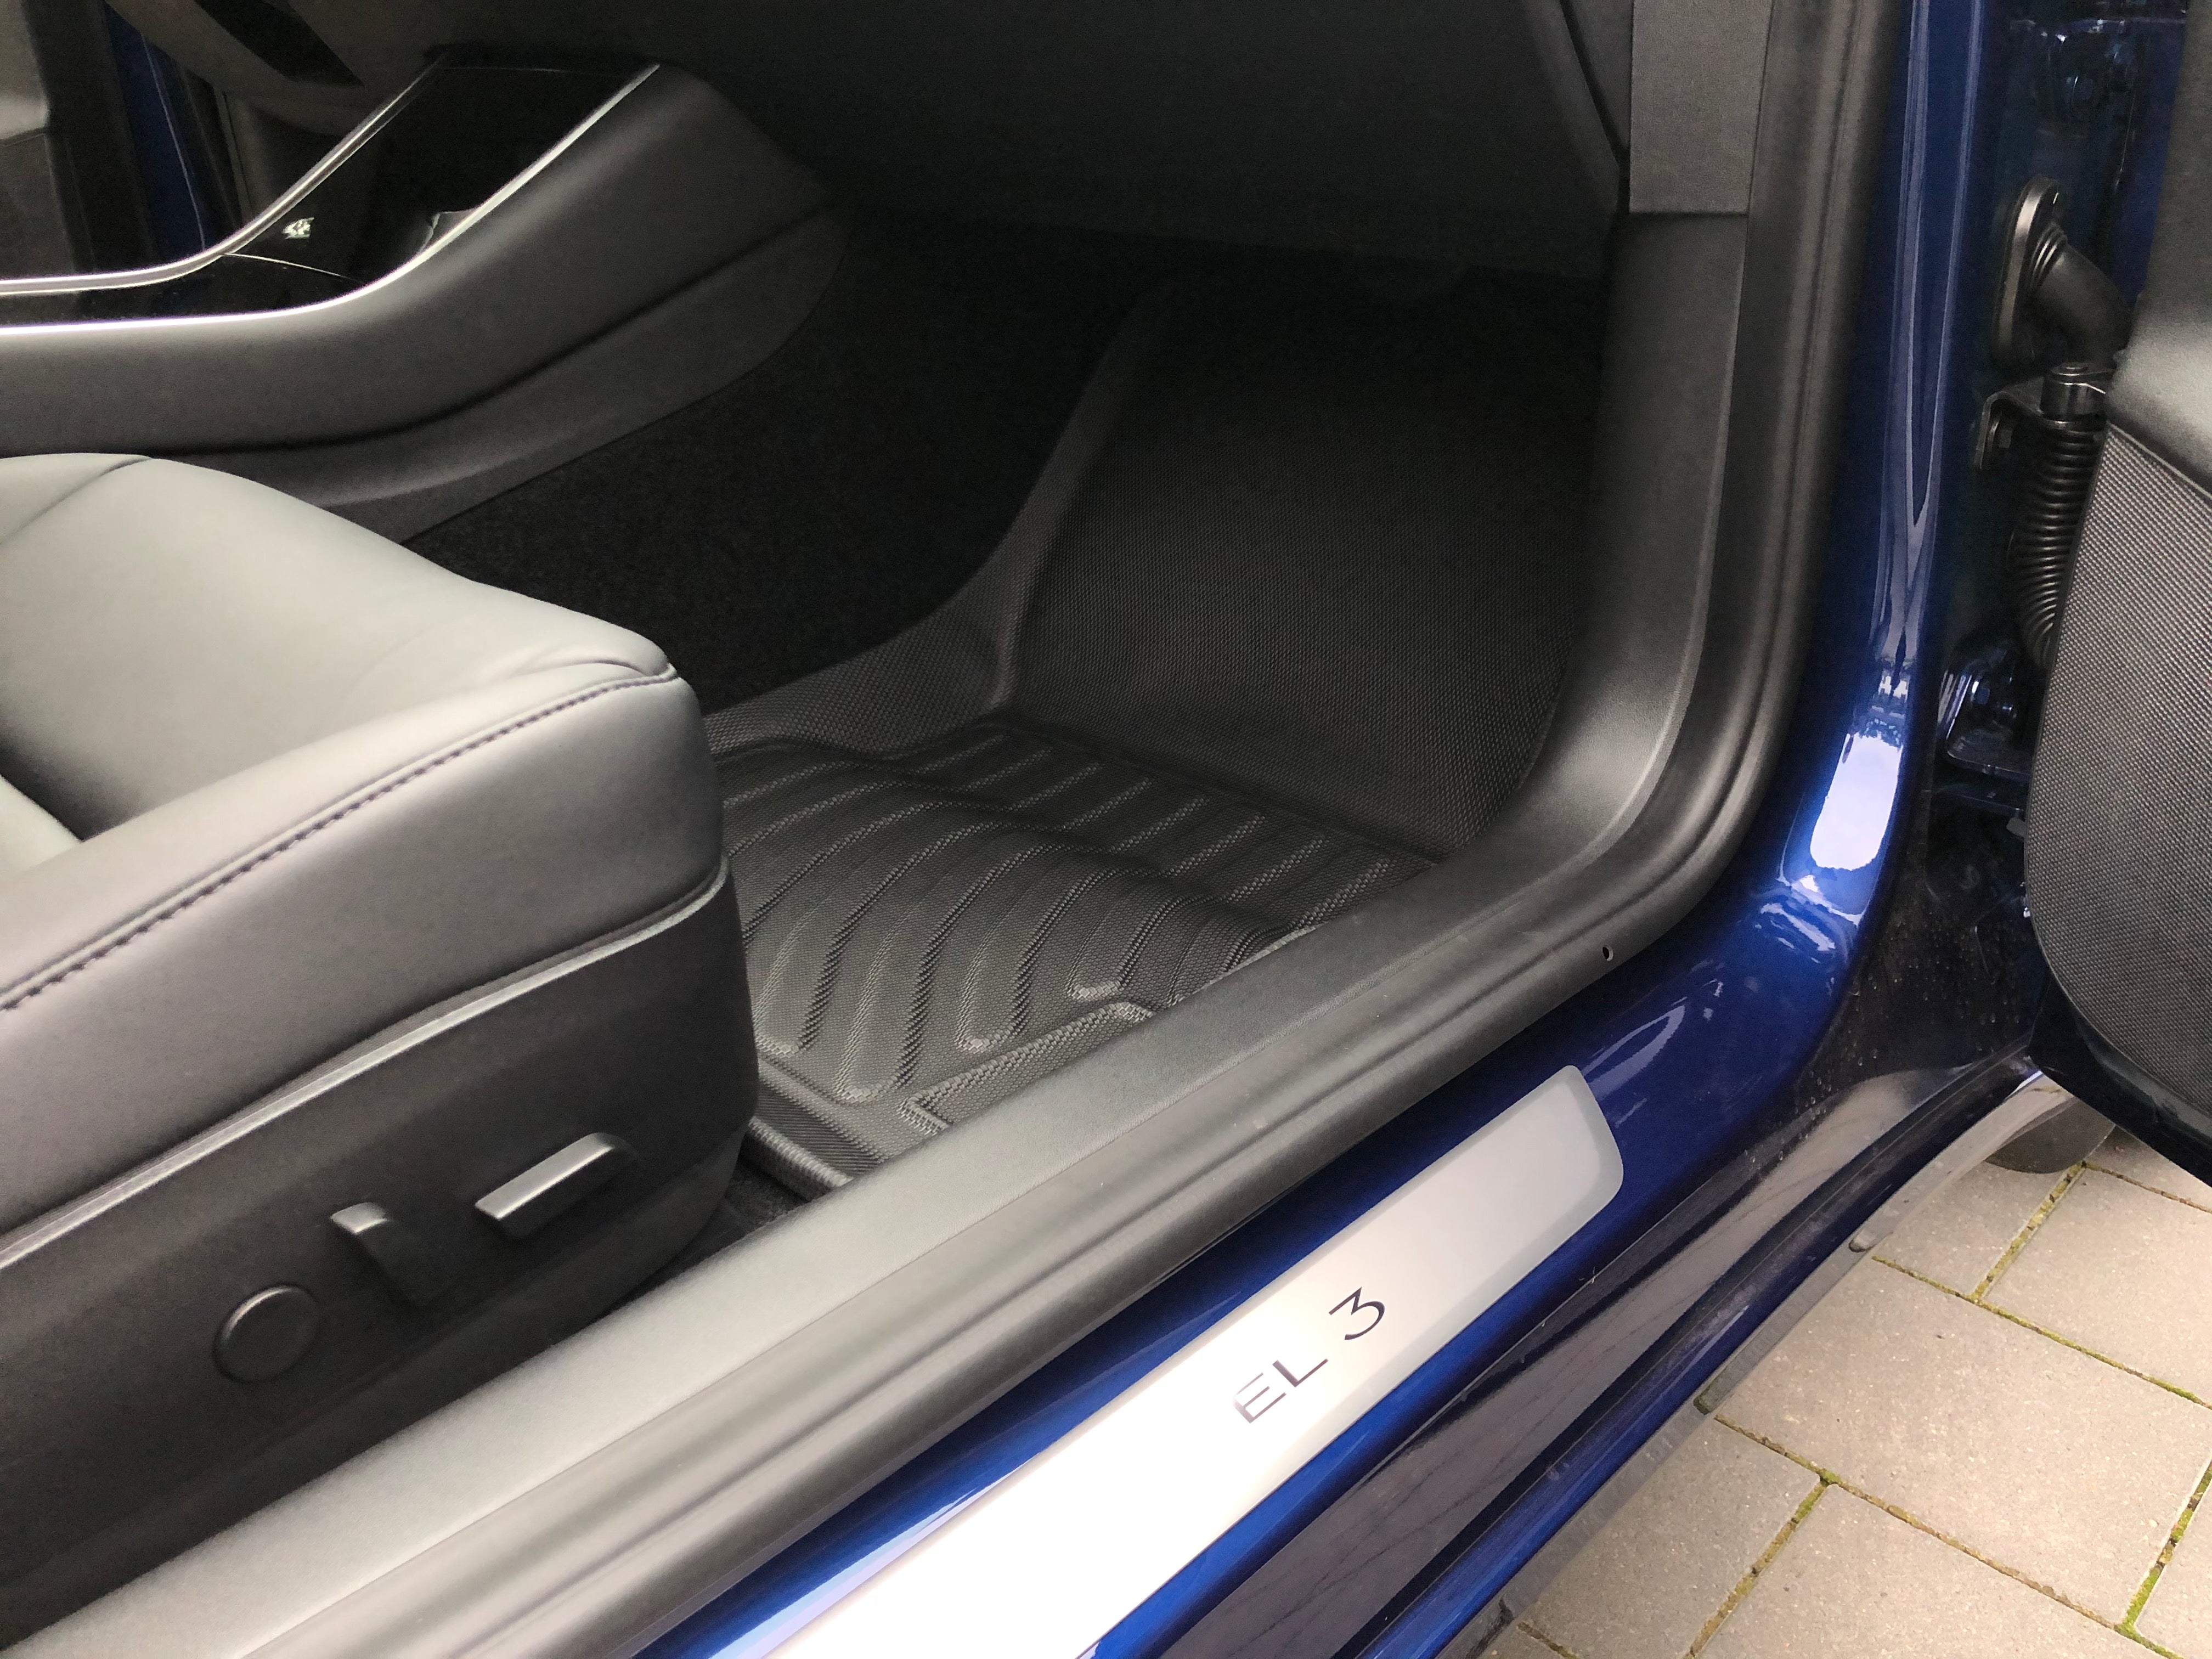 Tesla Model 3 Fußmatten Set Matten Car Floor Mat in Saarland